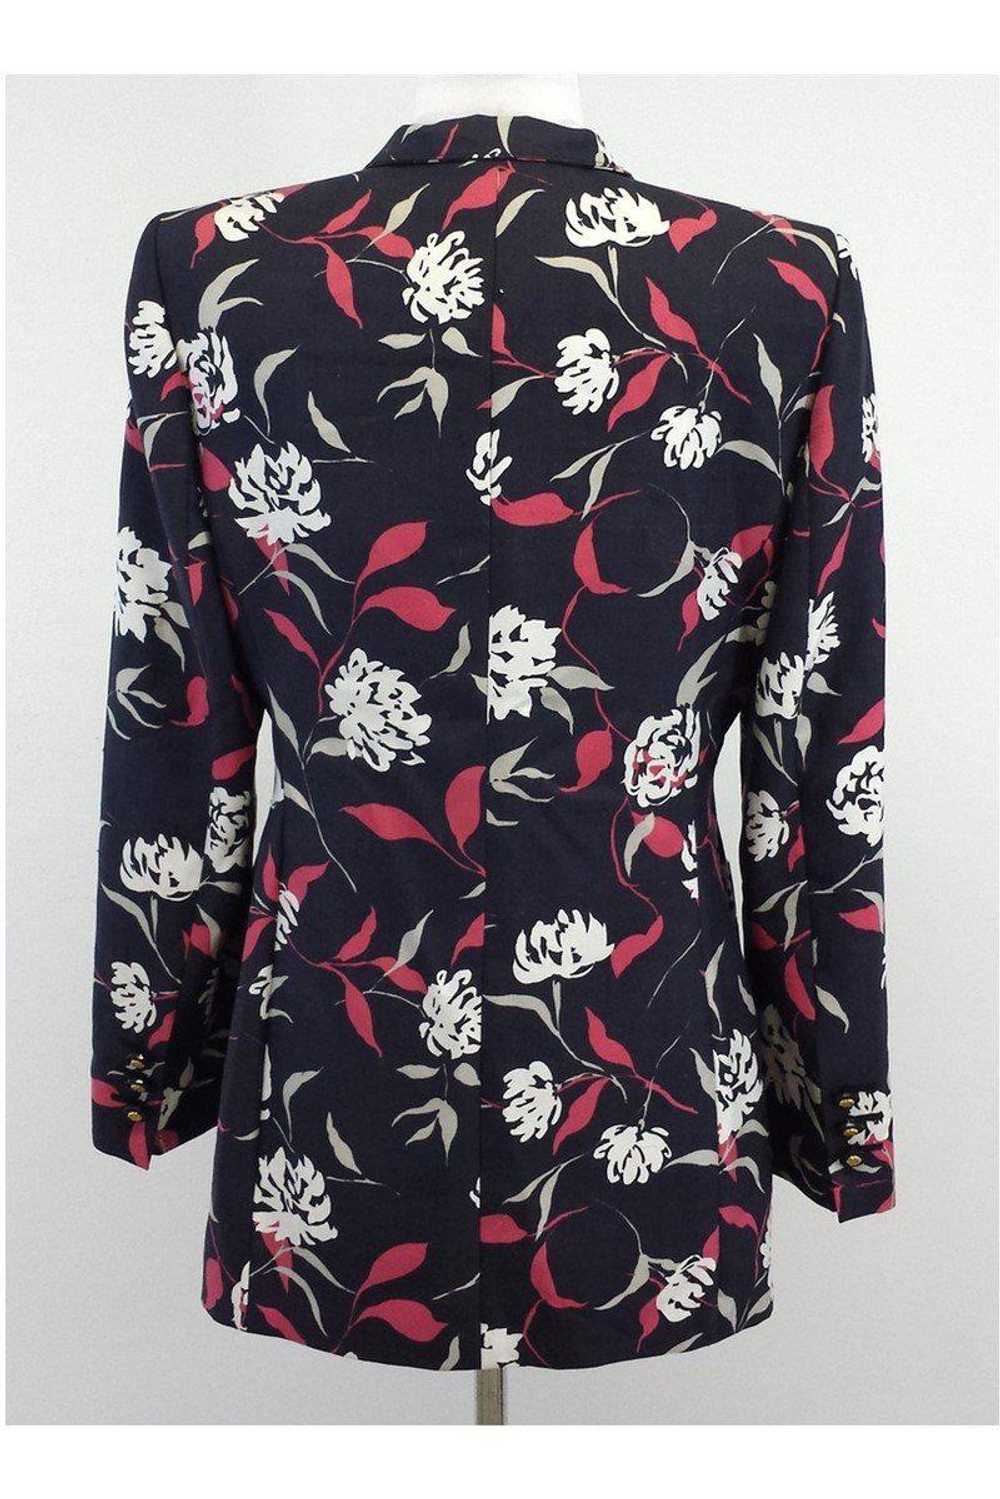 Louis Feraud - Floral Print Silk Suit Jacket Sz 8 - image 3